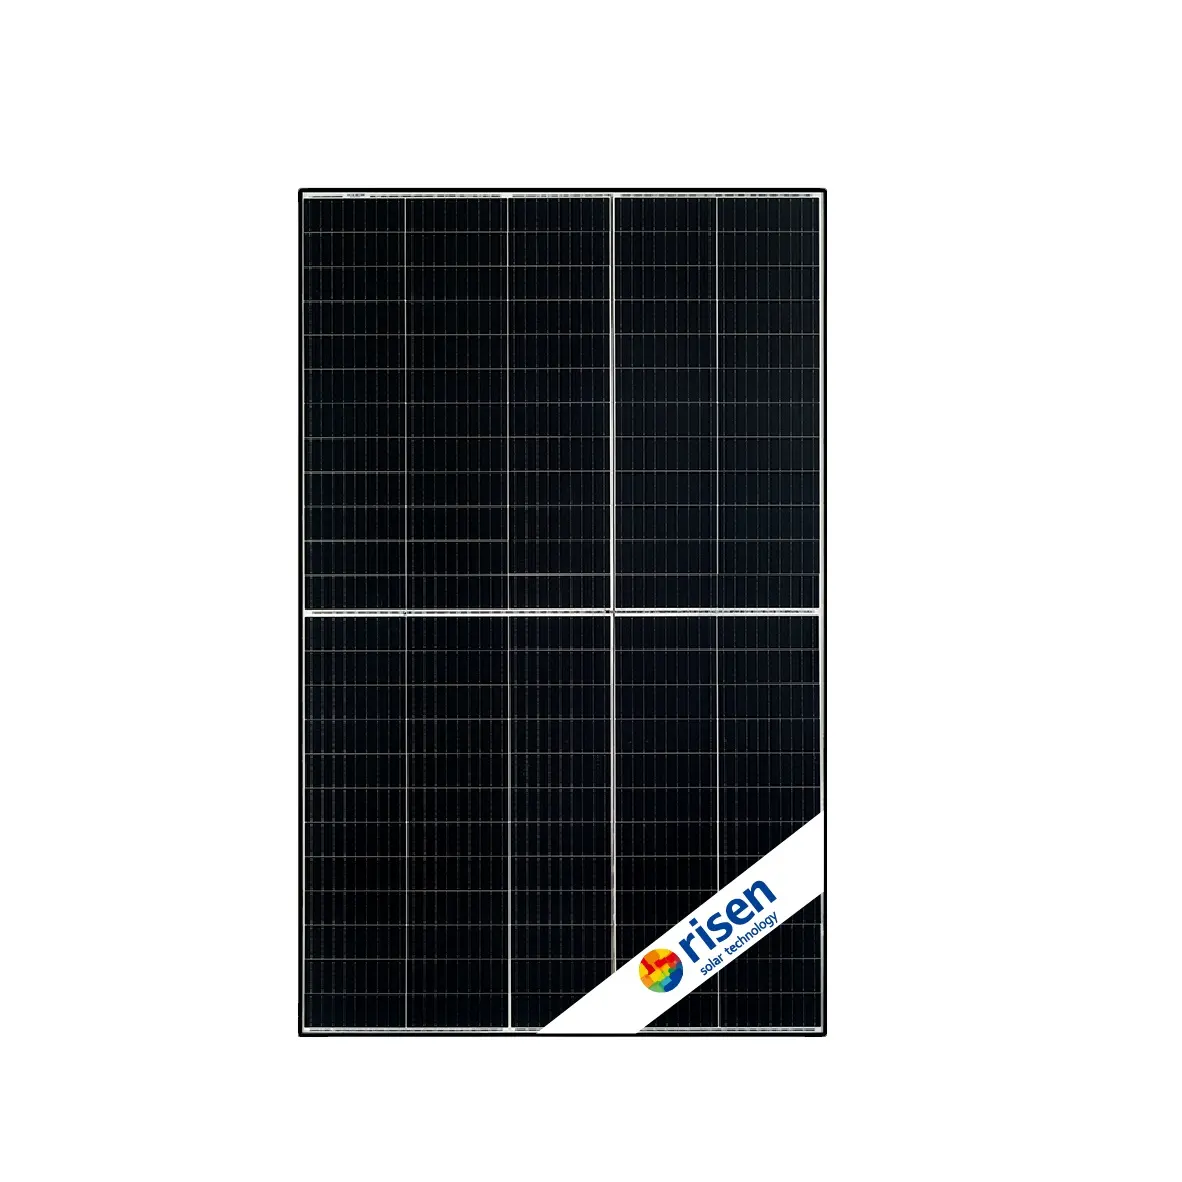 Modul Pv Rsm40-8-400m tingkat 1 merek Garansi 25 tahun Panel surya naik 390w-410w 120 sel Perc Mono 400w Panel fotovoltaik